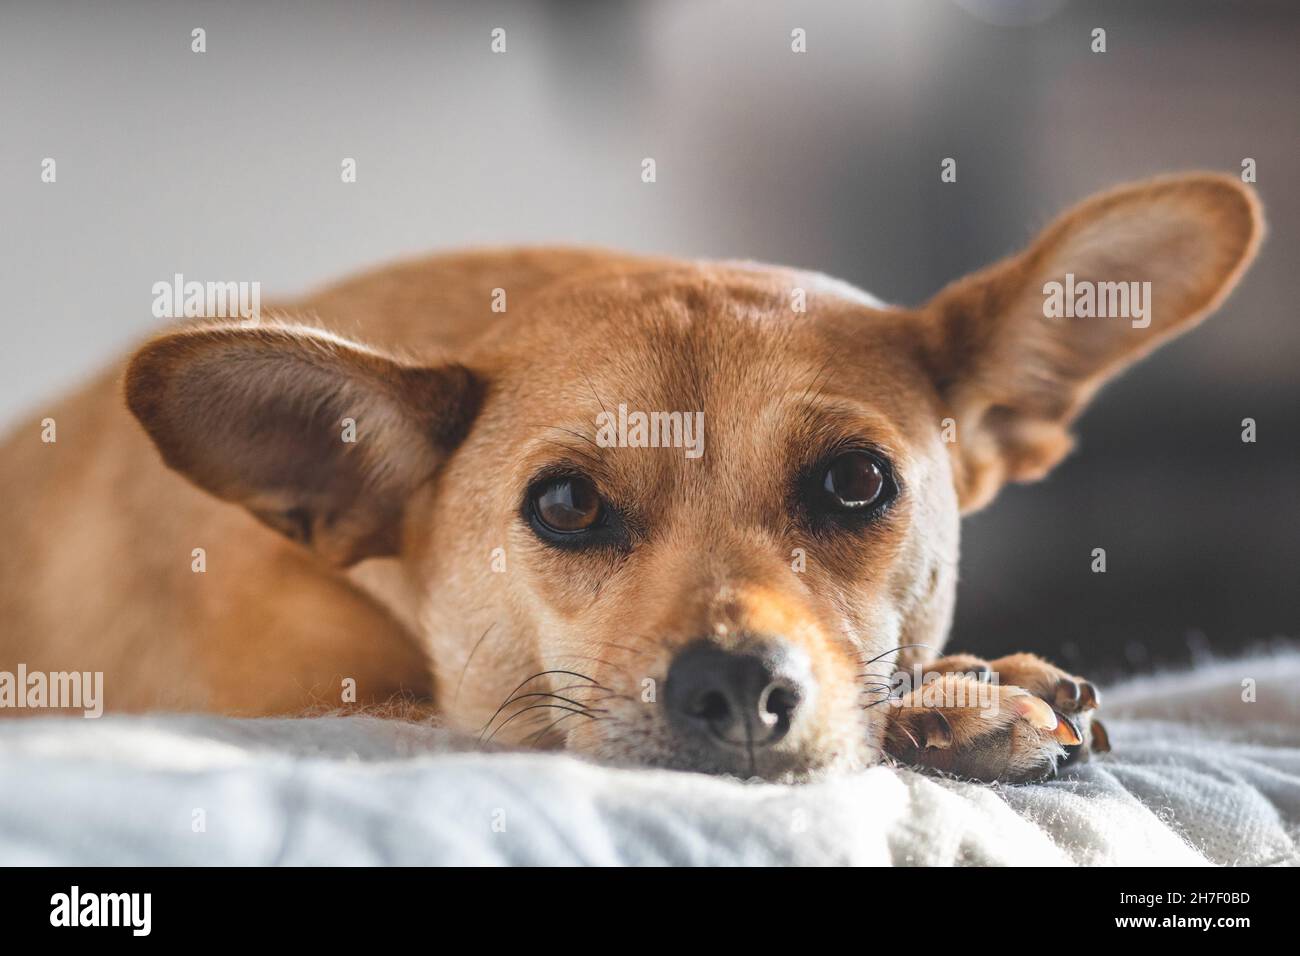 Nahaufnahme eines süßen Mischlingshundes in einer gemütlichen Wohnumgebung, der die Kamera anschaut und sich auf das Bett legt, mit Fokus auf zarte Augen. Geringe Schärfentiefe Stockfoto